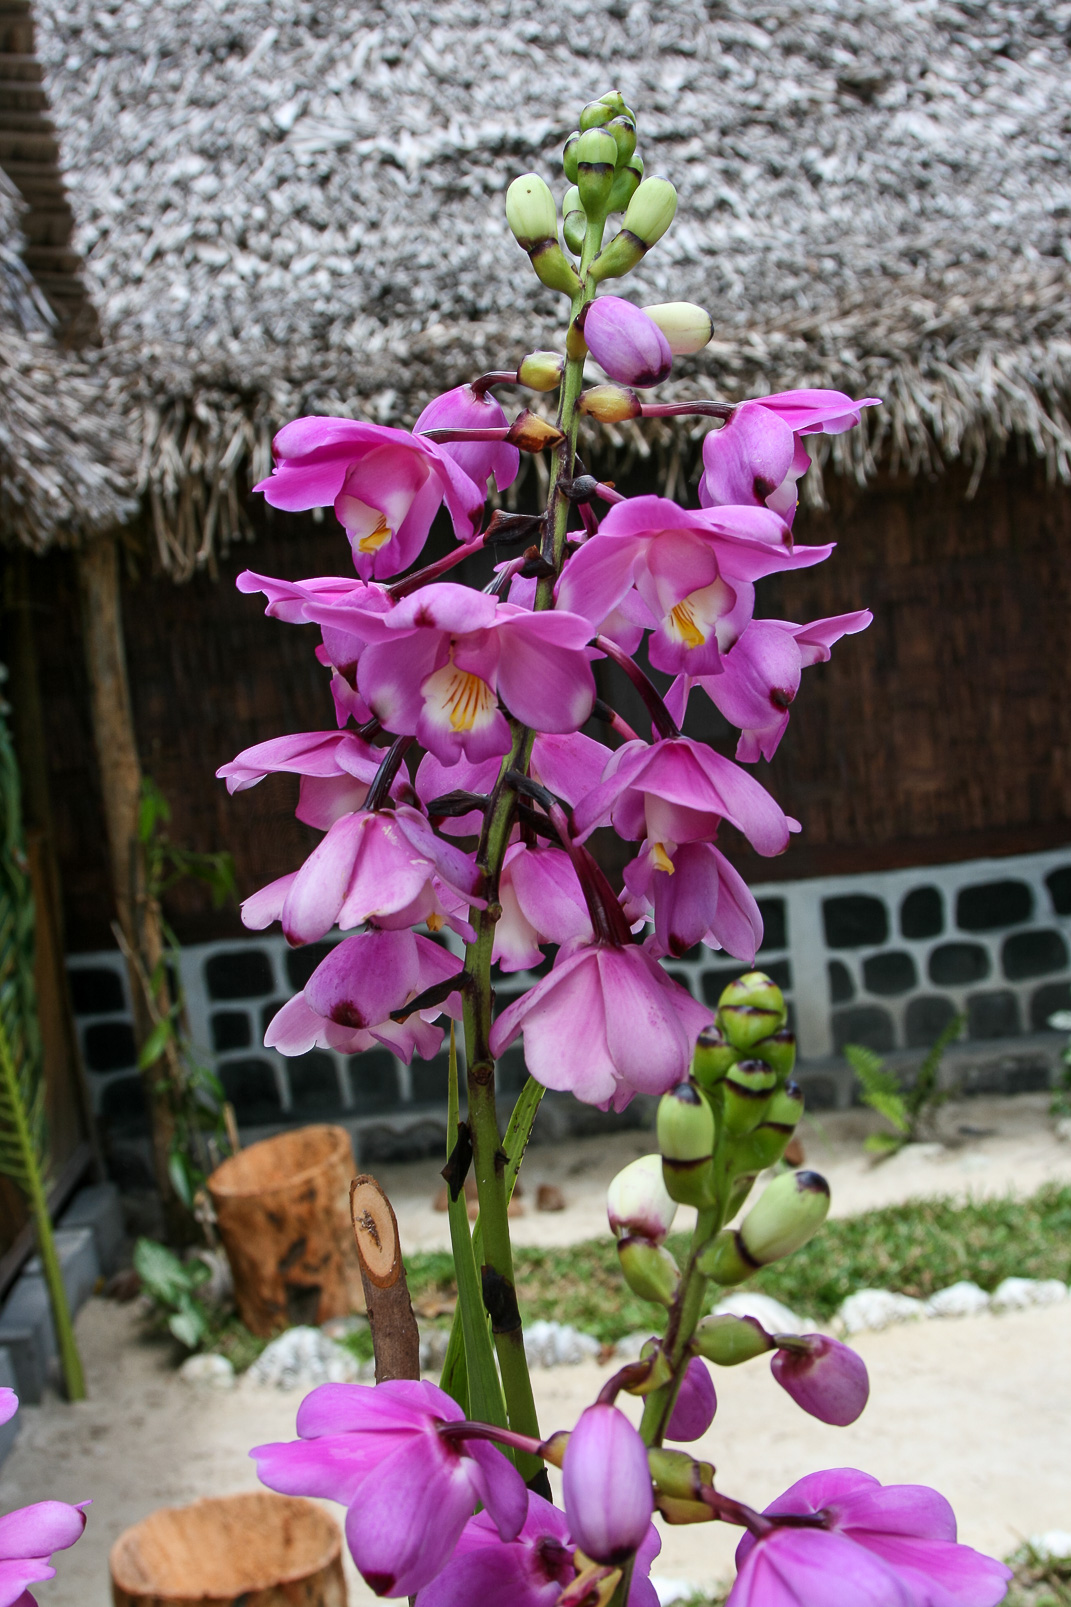 Eulophiella roempleriana, orchidée endémique de cette île et surnomée la "reine des orchidées".